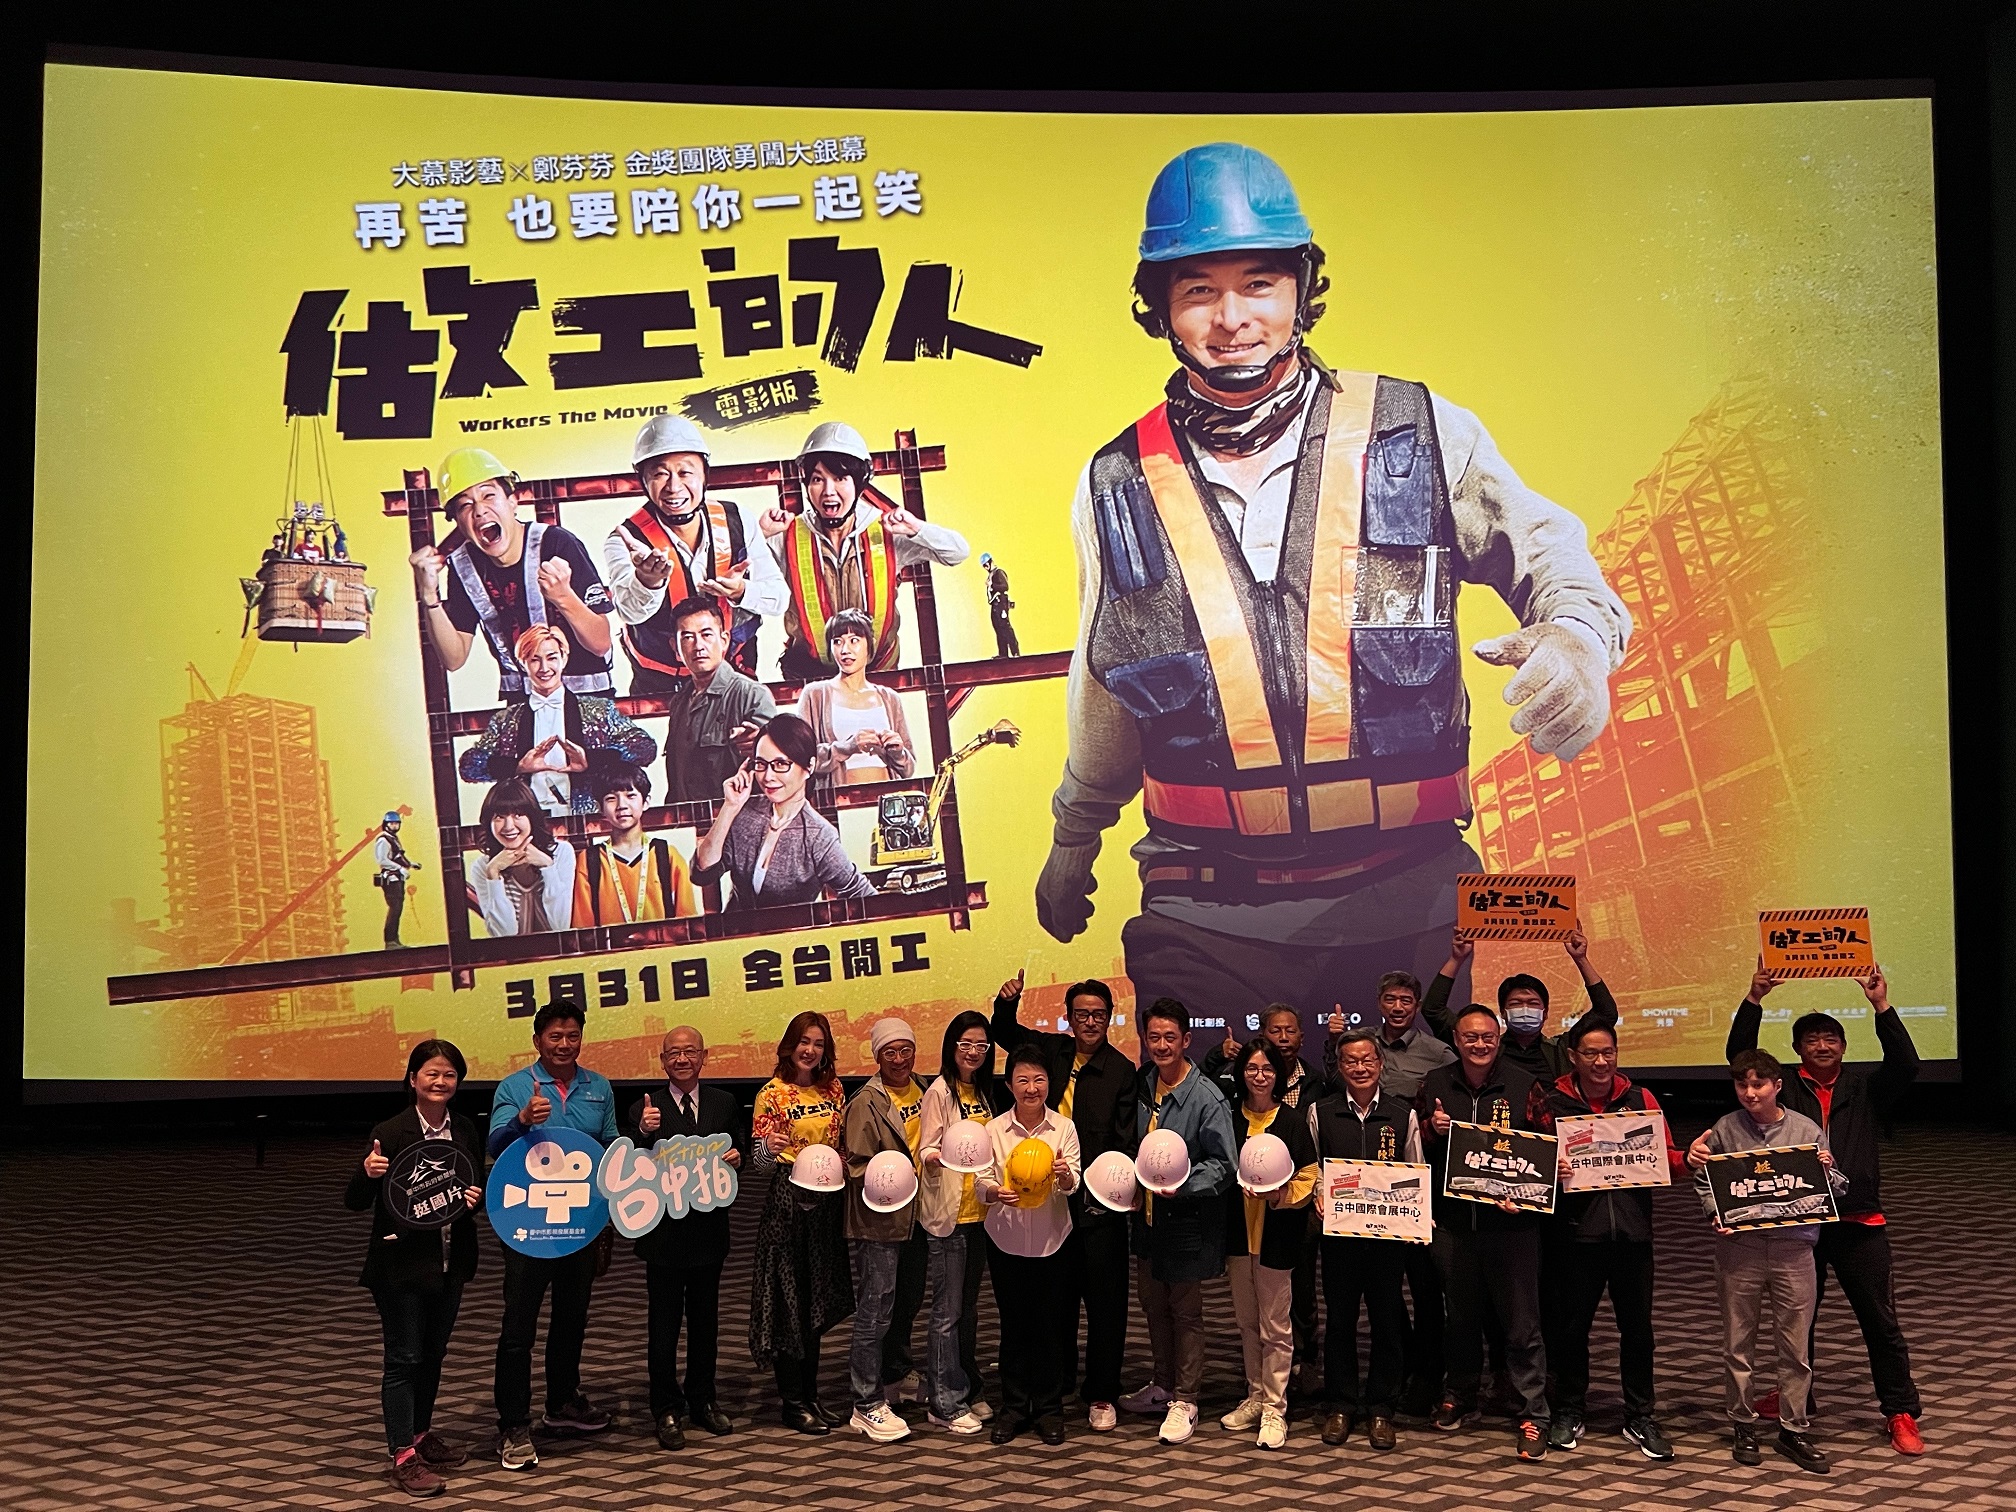 《做工的人電影版》刻劃工地小人物堅韌精神 台中國際會展中心登上大螢幕